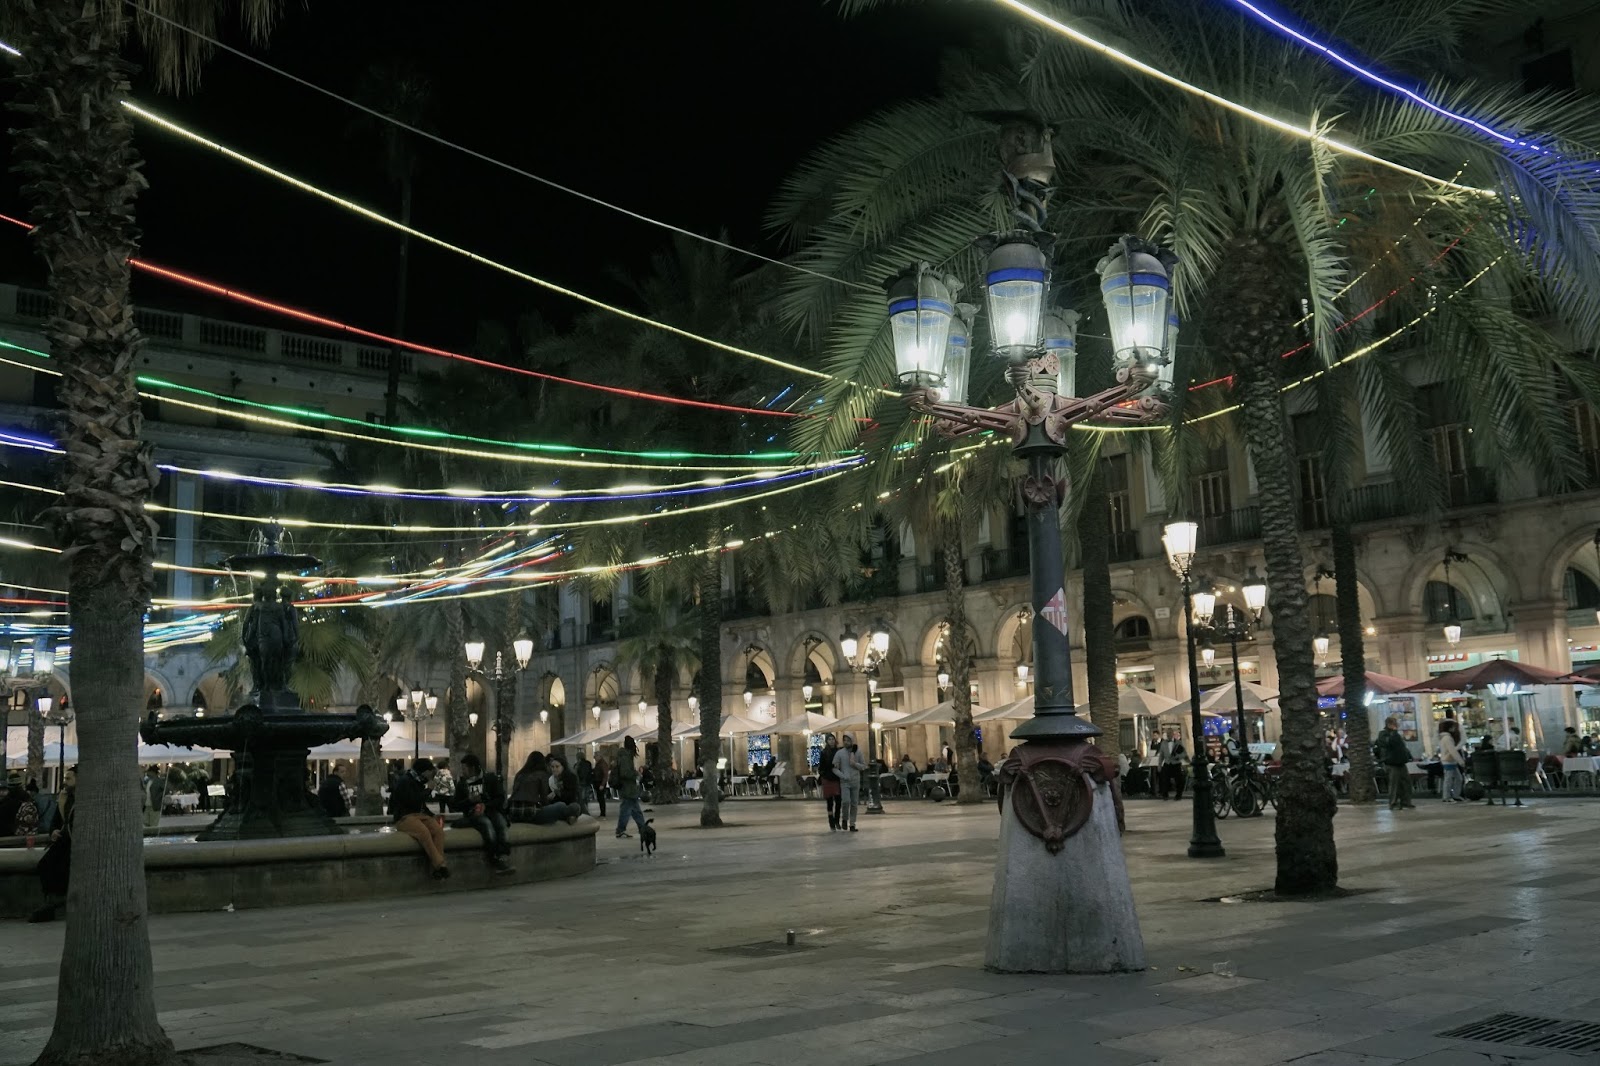 レイアール広場のクリスマス・イルミネーションと街灯